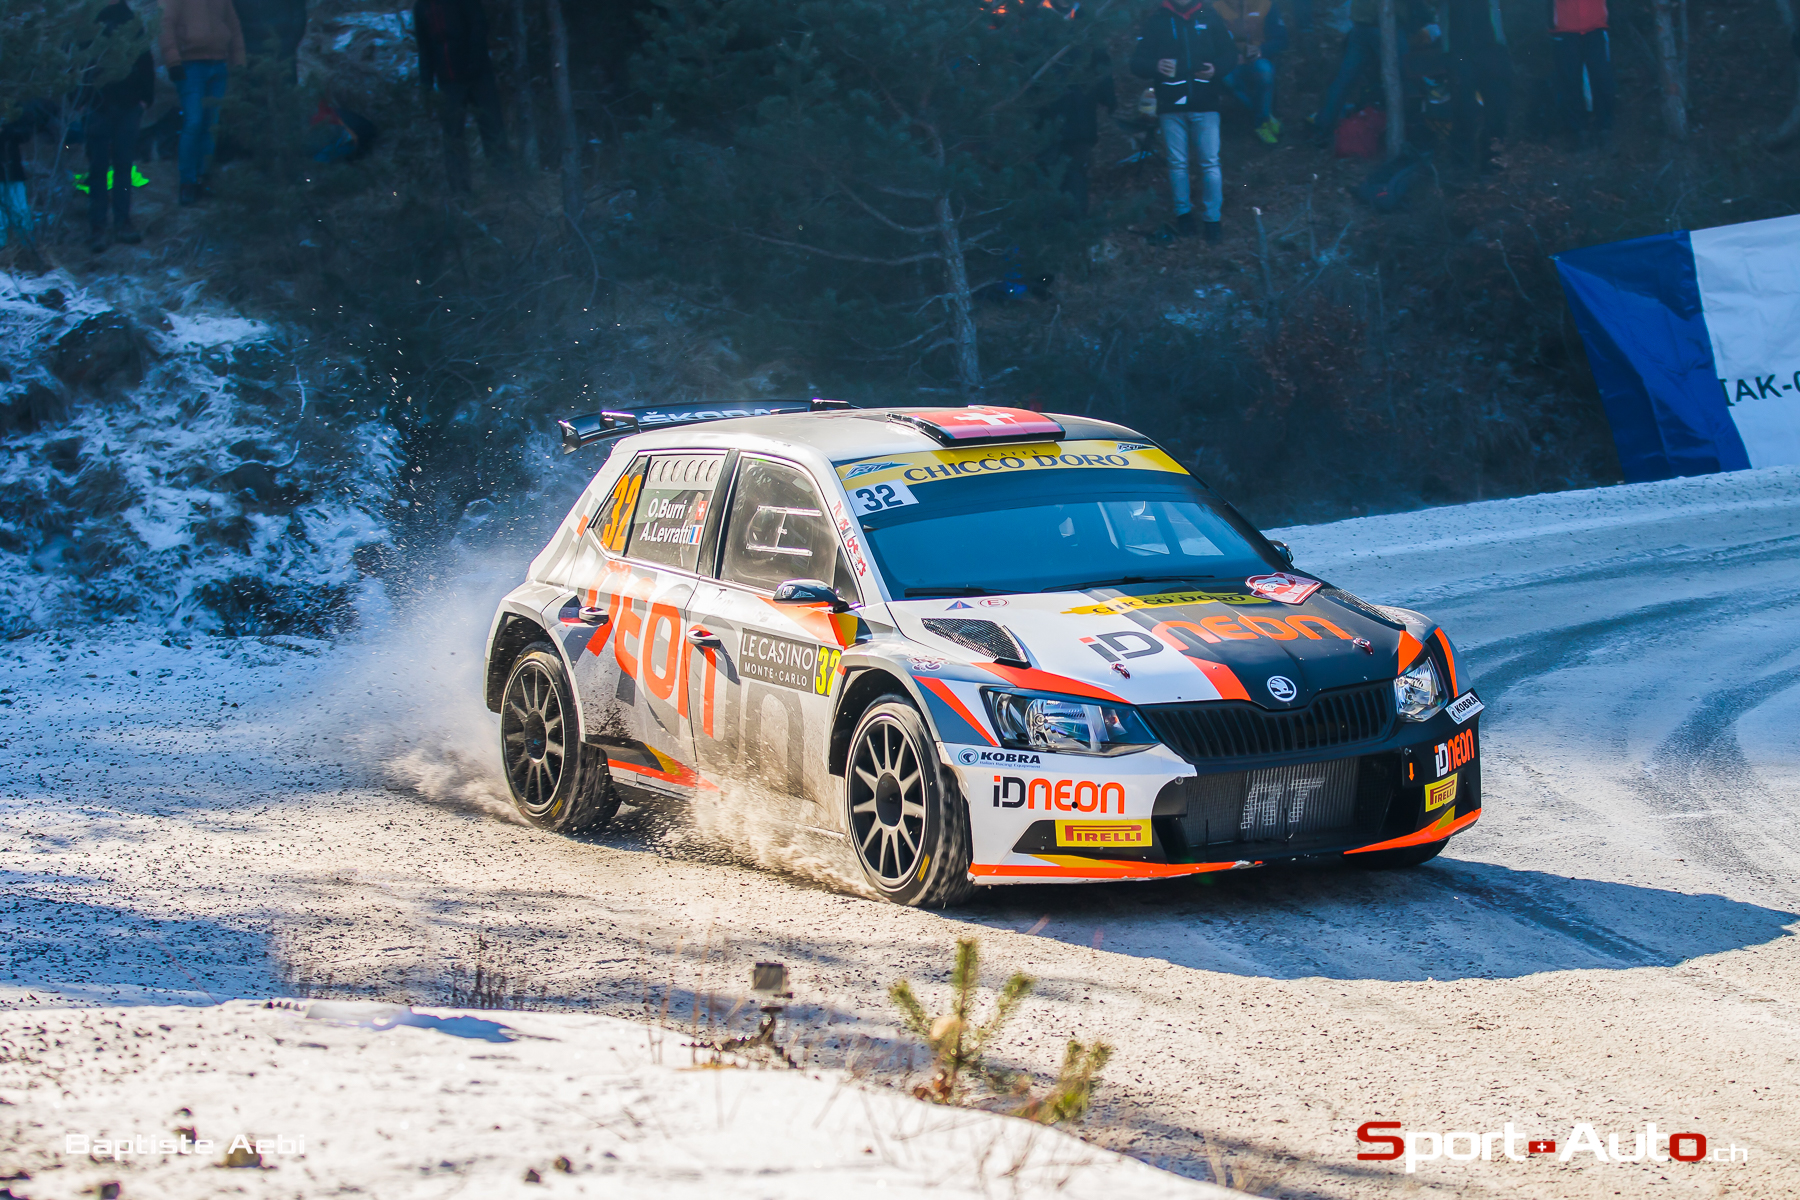 WRC – Rallye Monte-Carlo J3: Olivier Burri conserve son 16ème rang malgré une crevaison